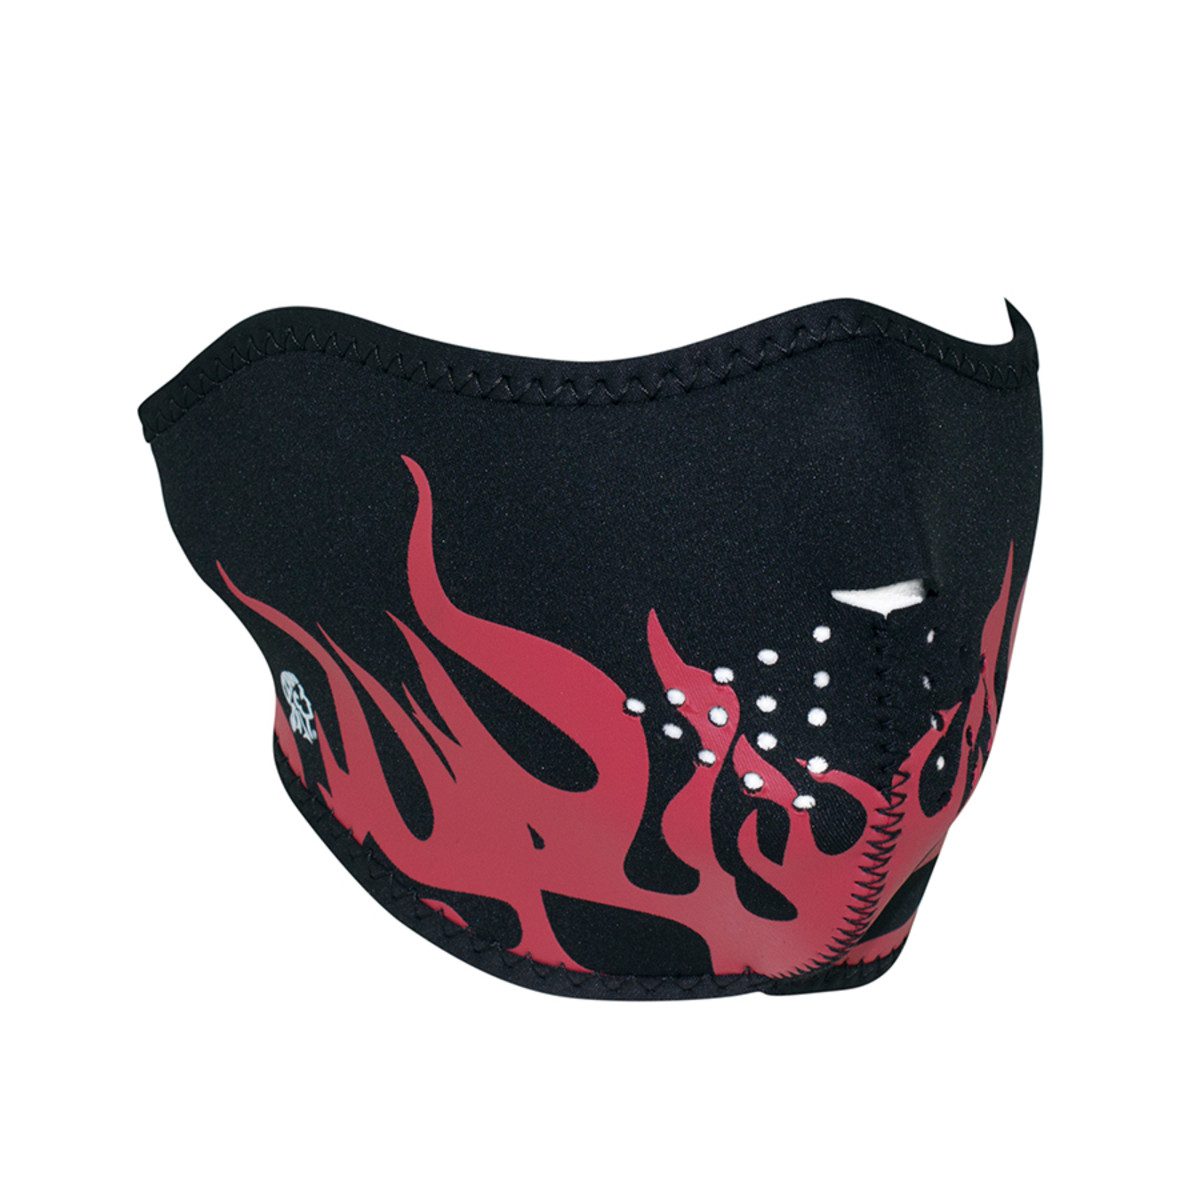 Zan Headgear Neoprene Half-Face Mask - Red Flames